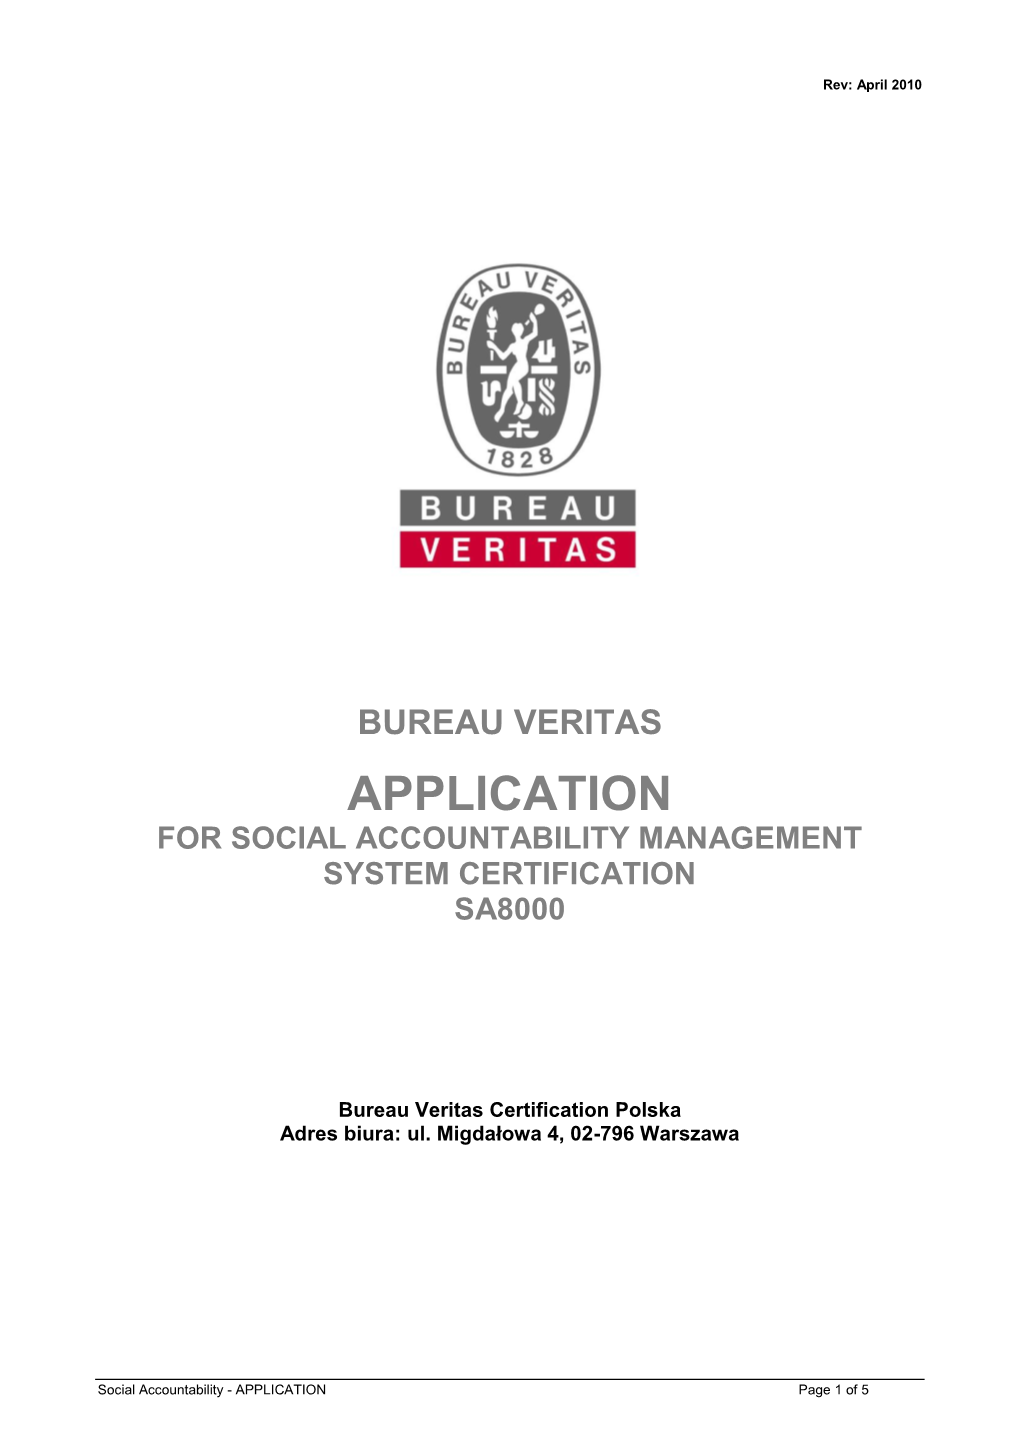 Bureau Veritas Application for Social Accountability Management System